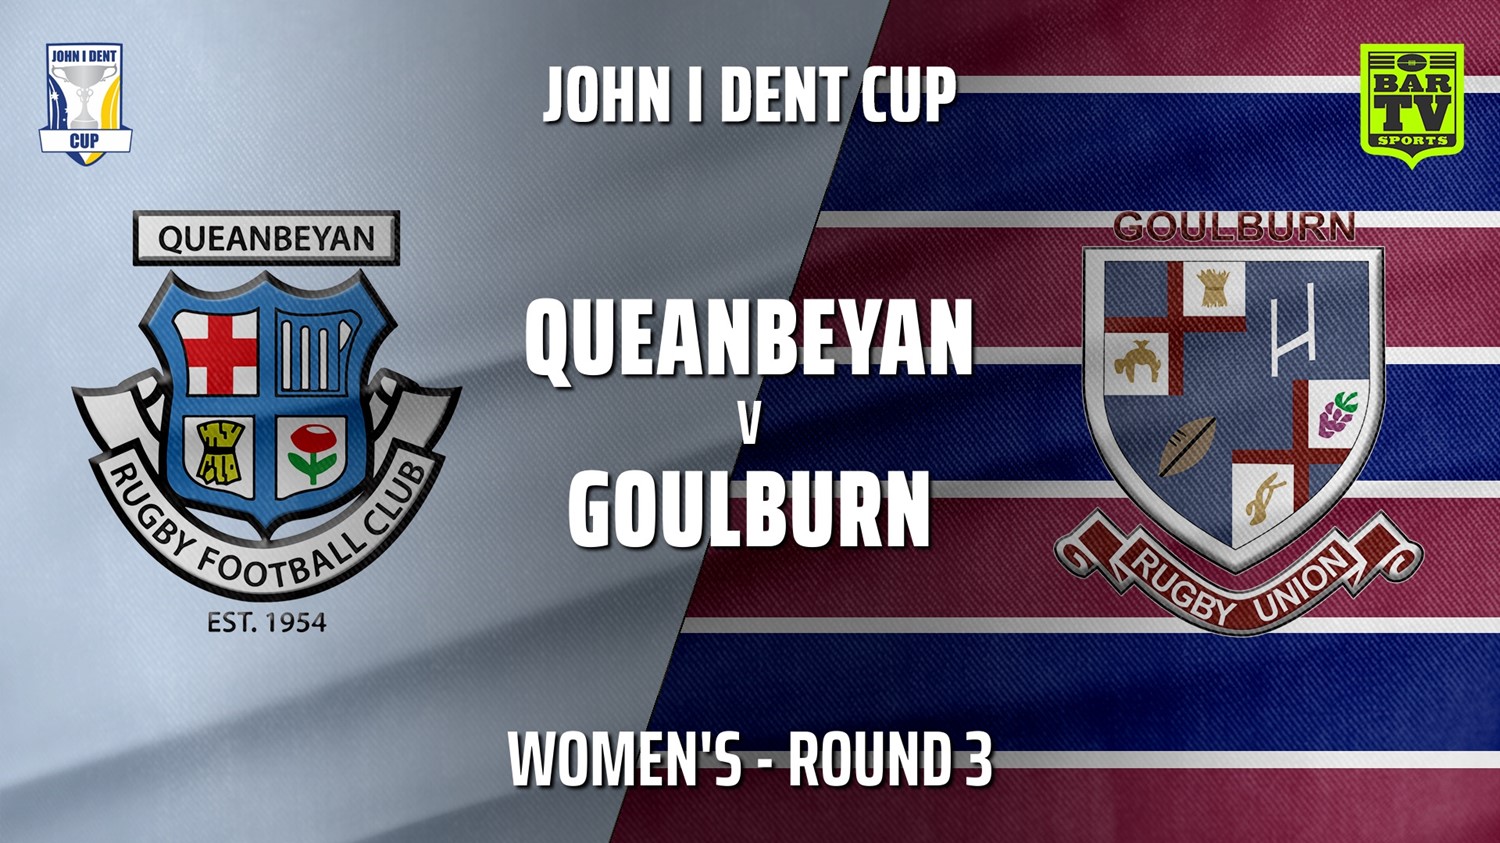 210501-John I Dent Round 3 - Women's - Queanbeyan Whites v Goulburn Minigame Slate Image